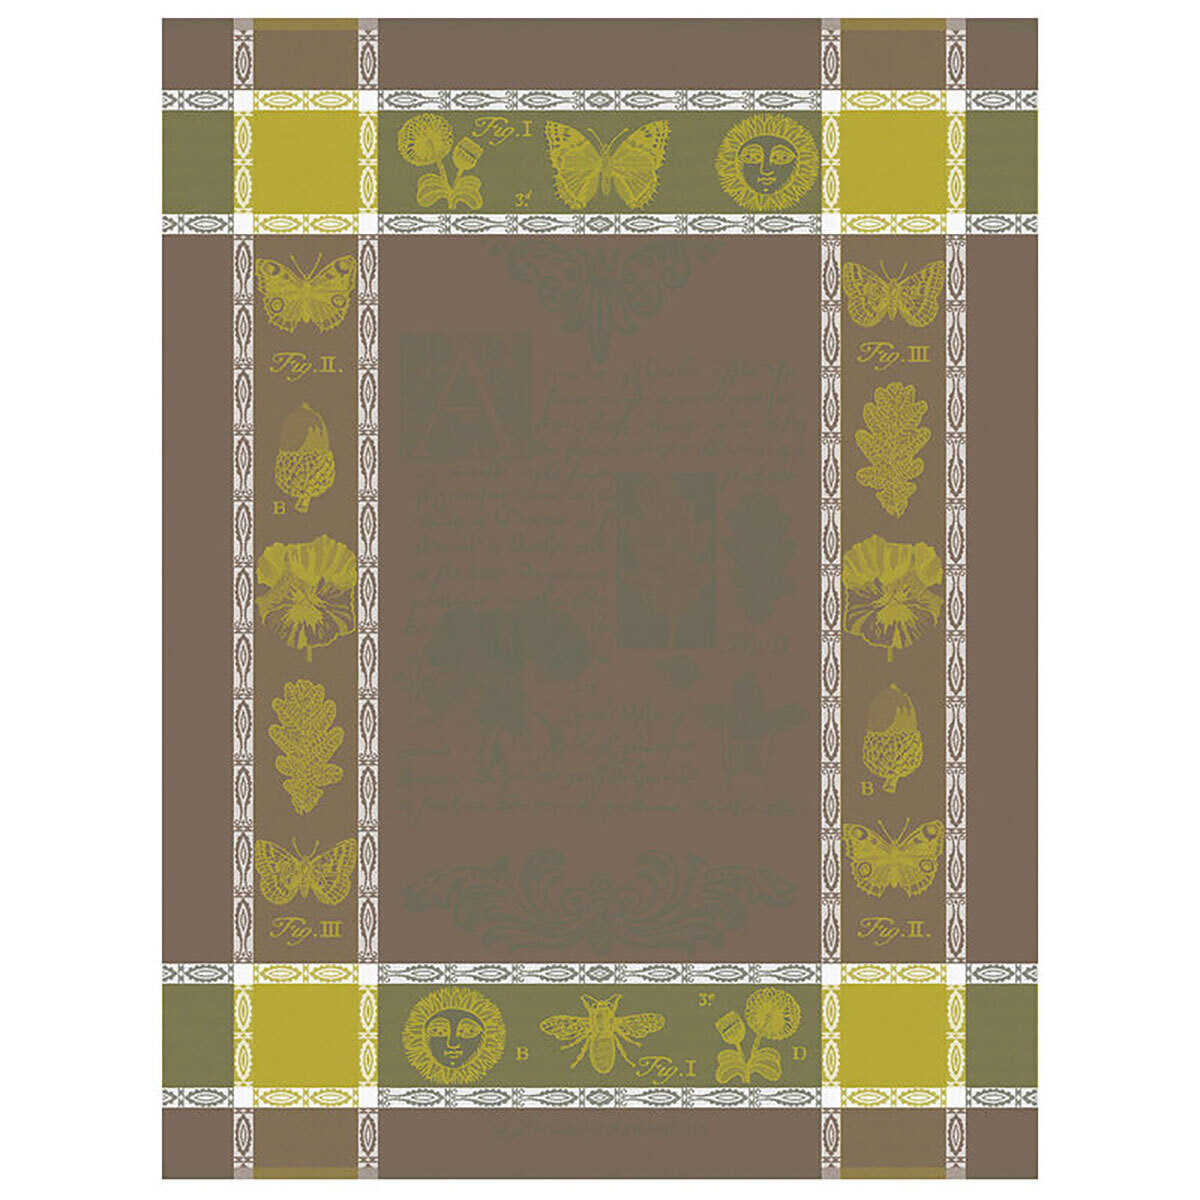 Le Jacquard Francais Tea Towel Botanique Green 100% Cotton 24 x 31 Inch 27469 Set of 4